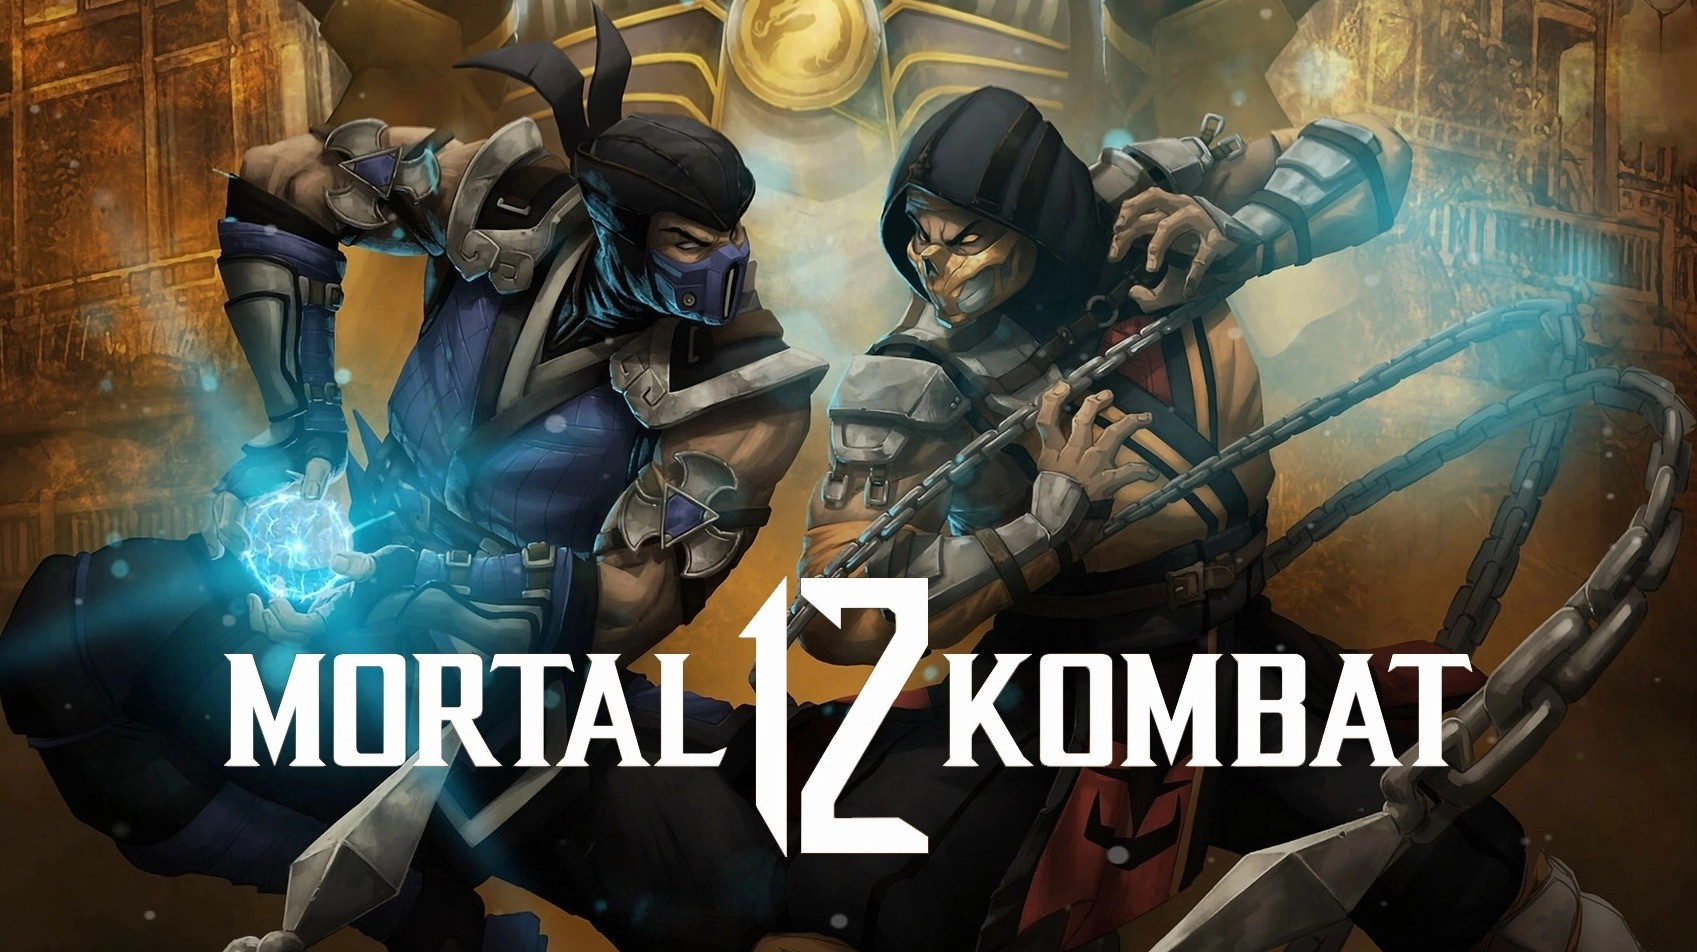 Mortal Kombat 12 được xác nhận sẽ sớm phát hành trong năm nay